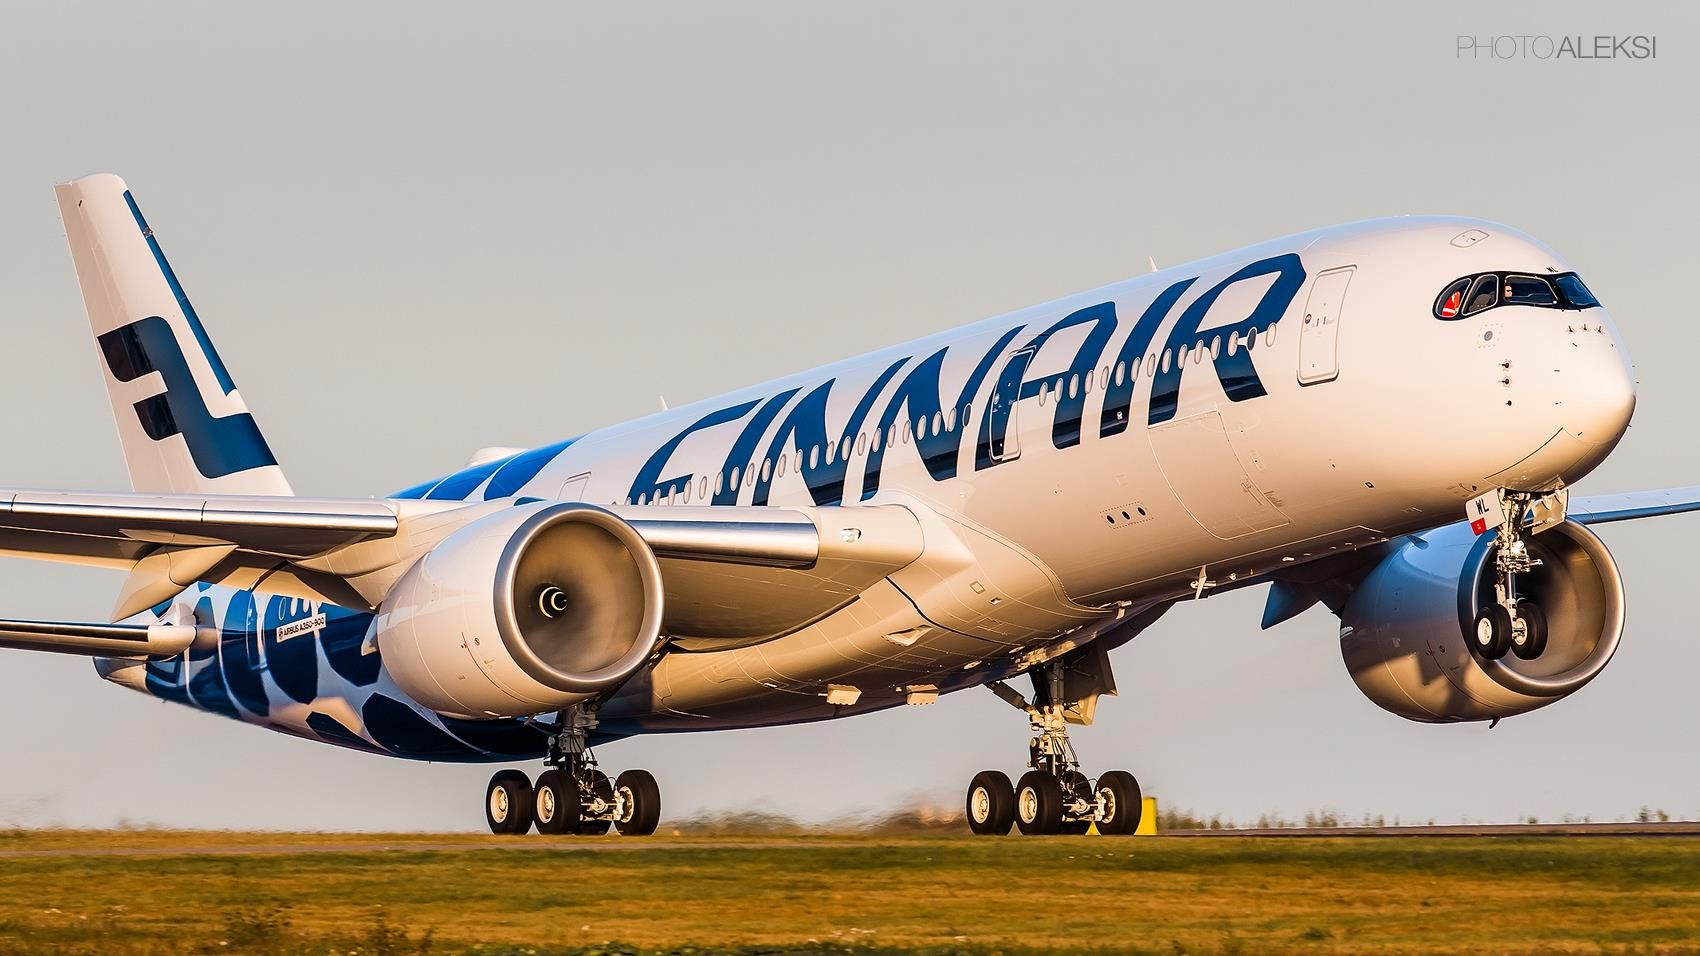 Finnair Airbus A350 Xwb - Finnair A350 , HD Wallpaper & Backgrounds